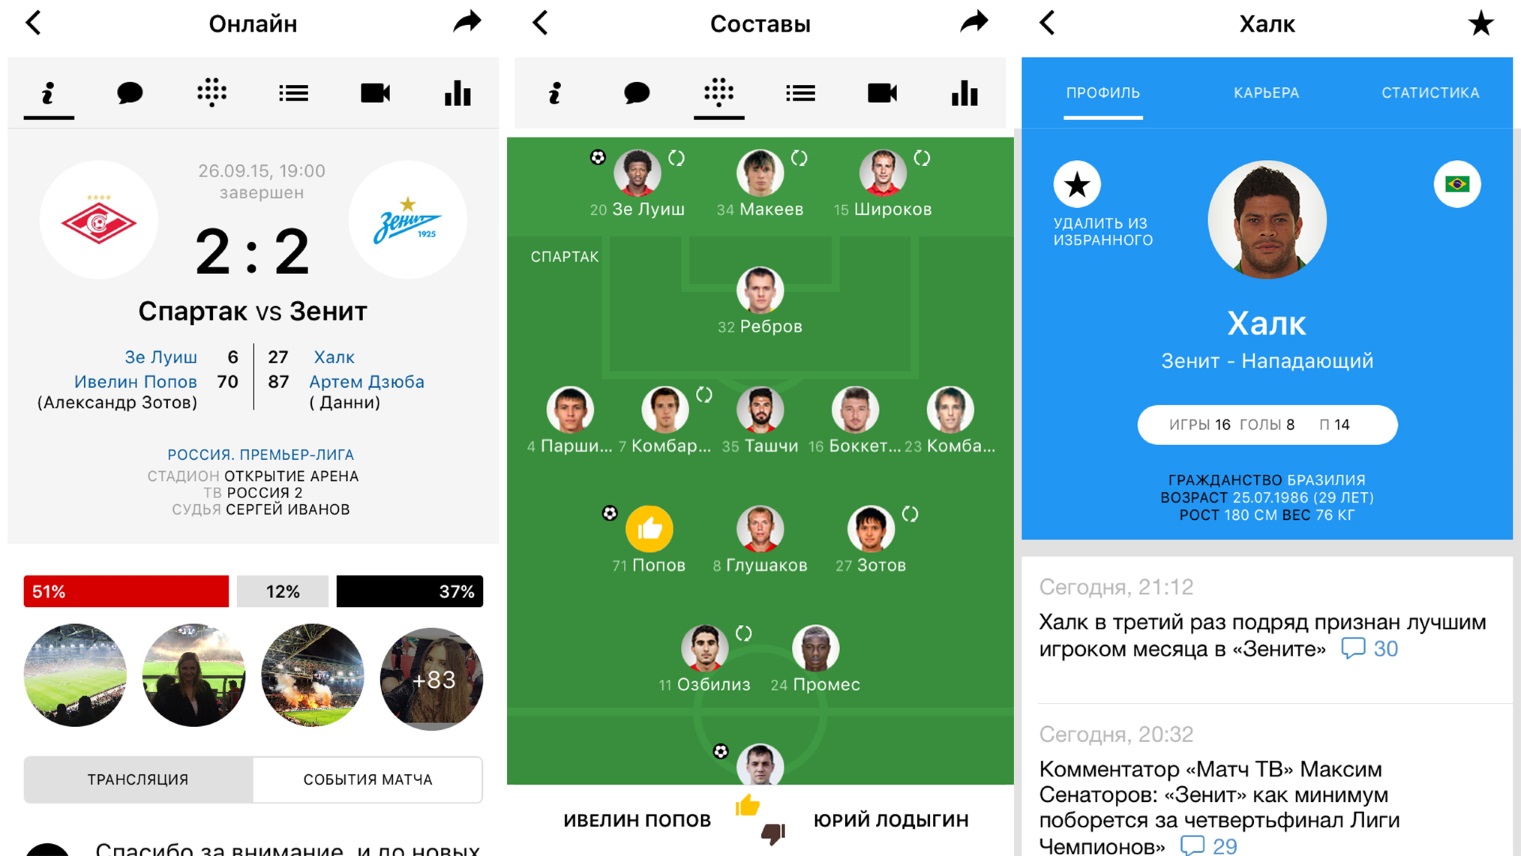 Scores & Video — лучшее футбольное приложение второго экрана (обзор)